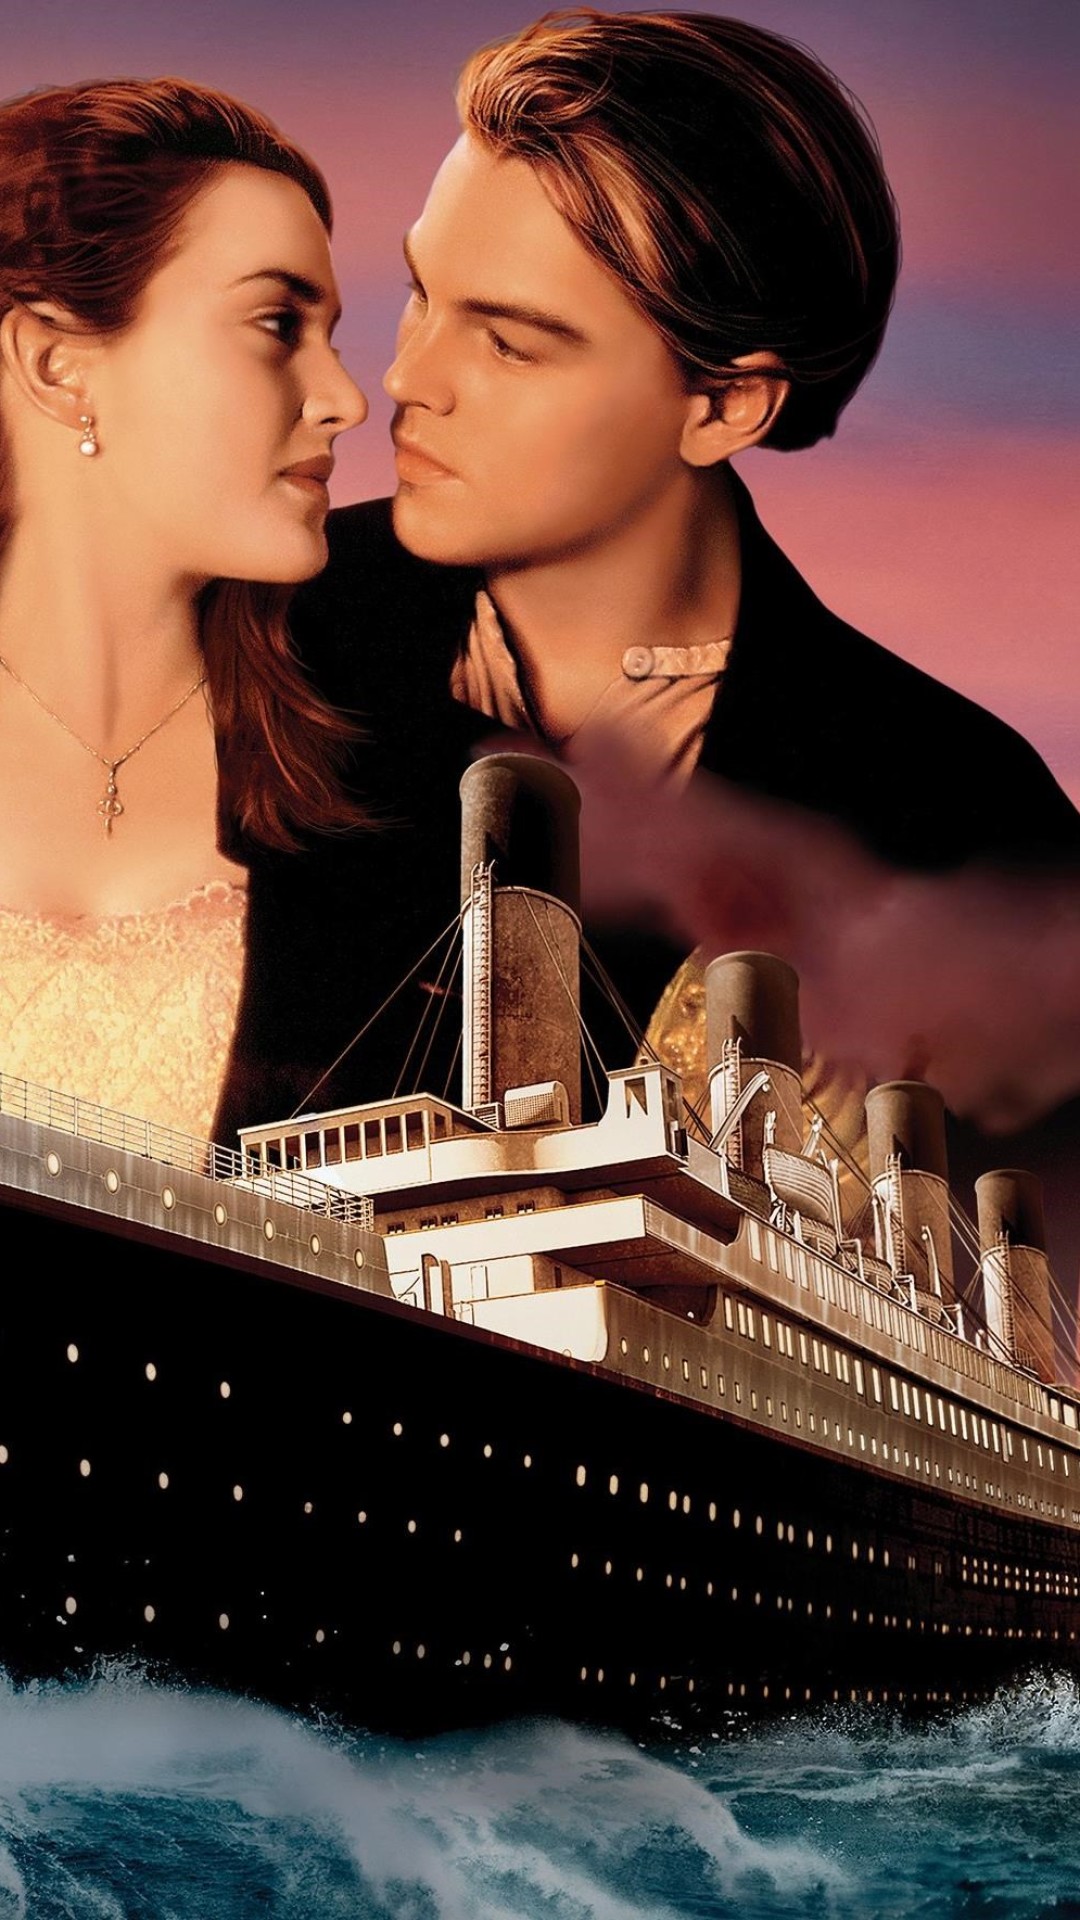 타이타닉의 hd 벽지,영화,포스터,사랑,로맨스,사진술